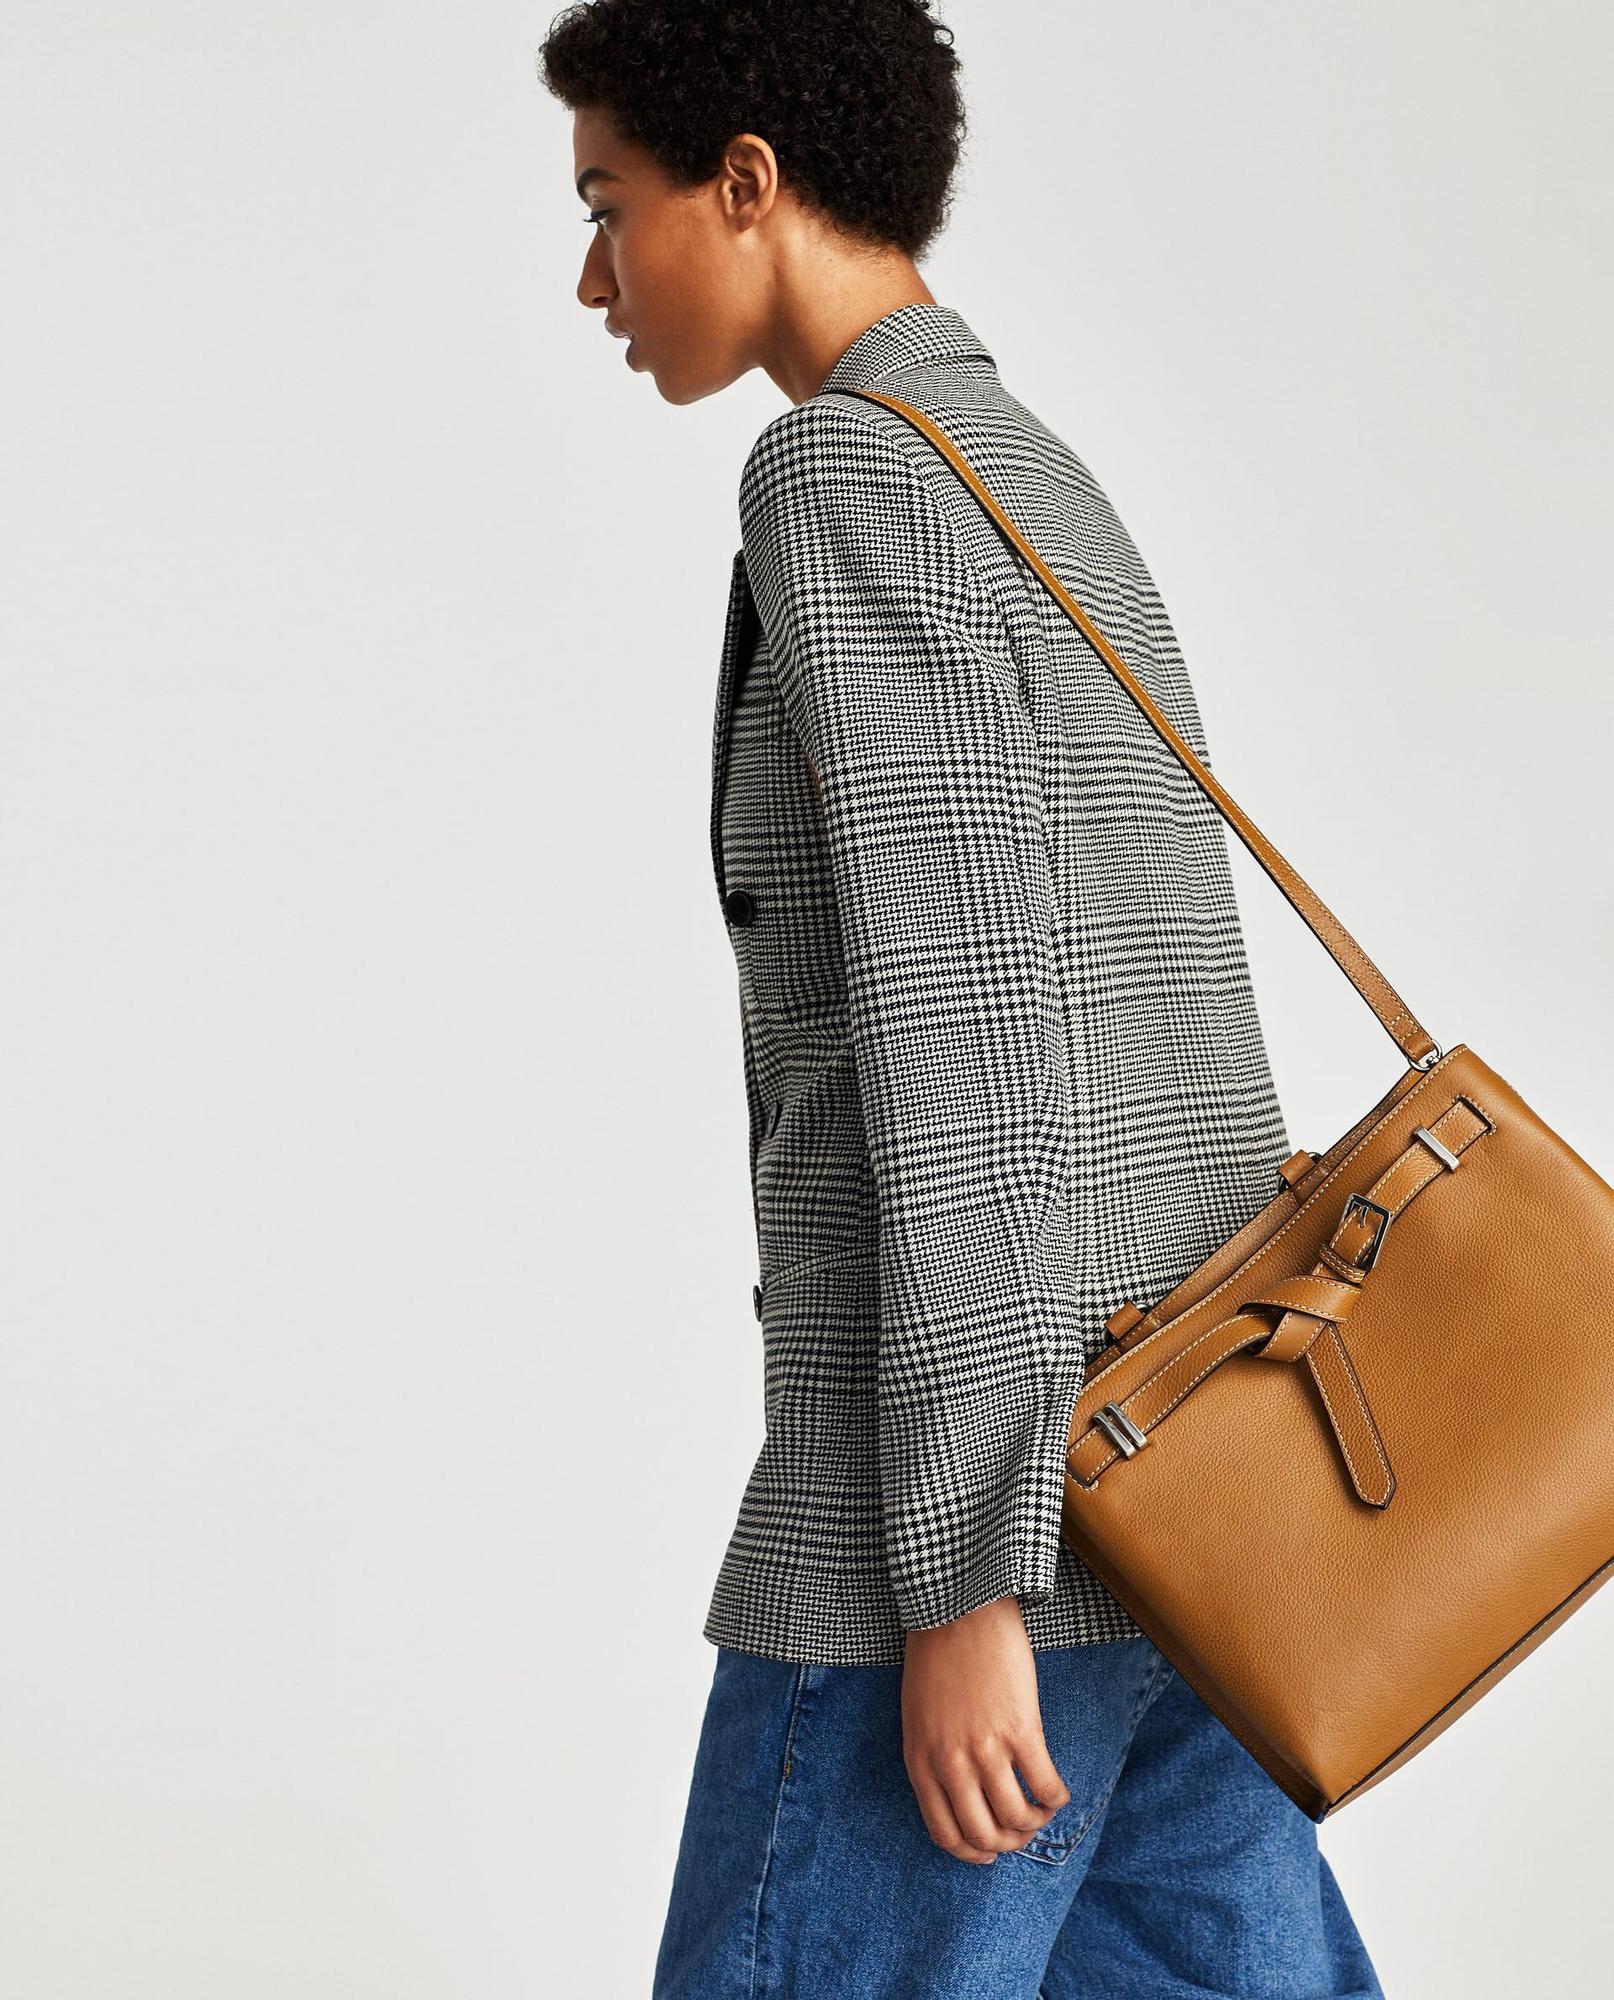 Estereotipo Error Salto Los bolsos de Zara que querrás en sus rebajas de enero de 2018 - Woman